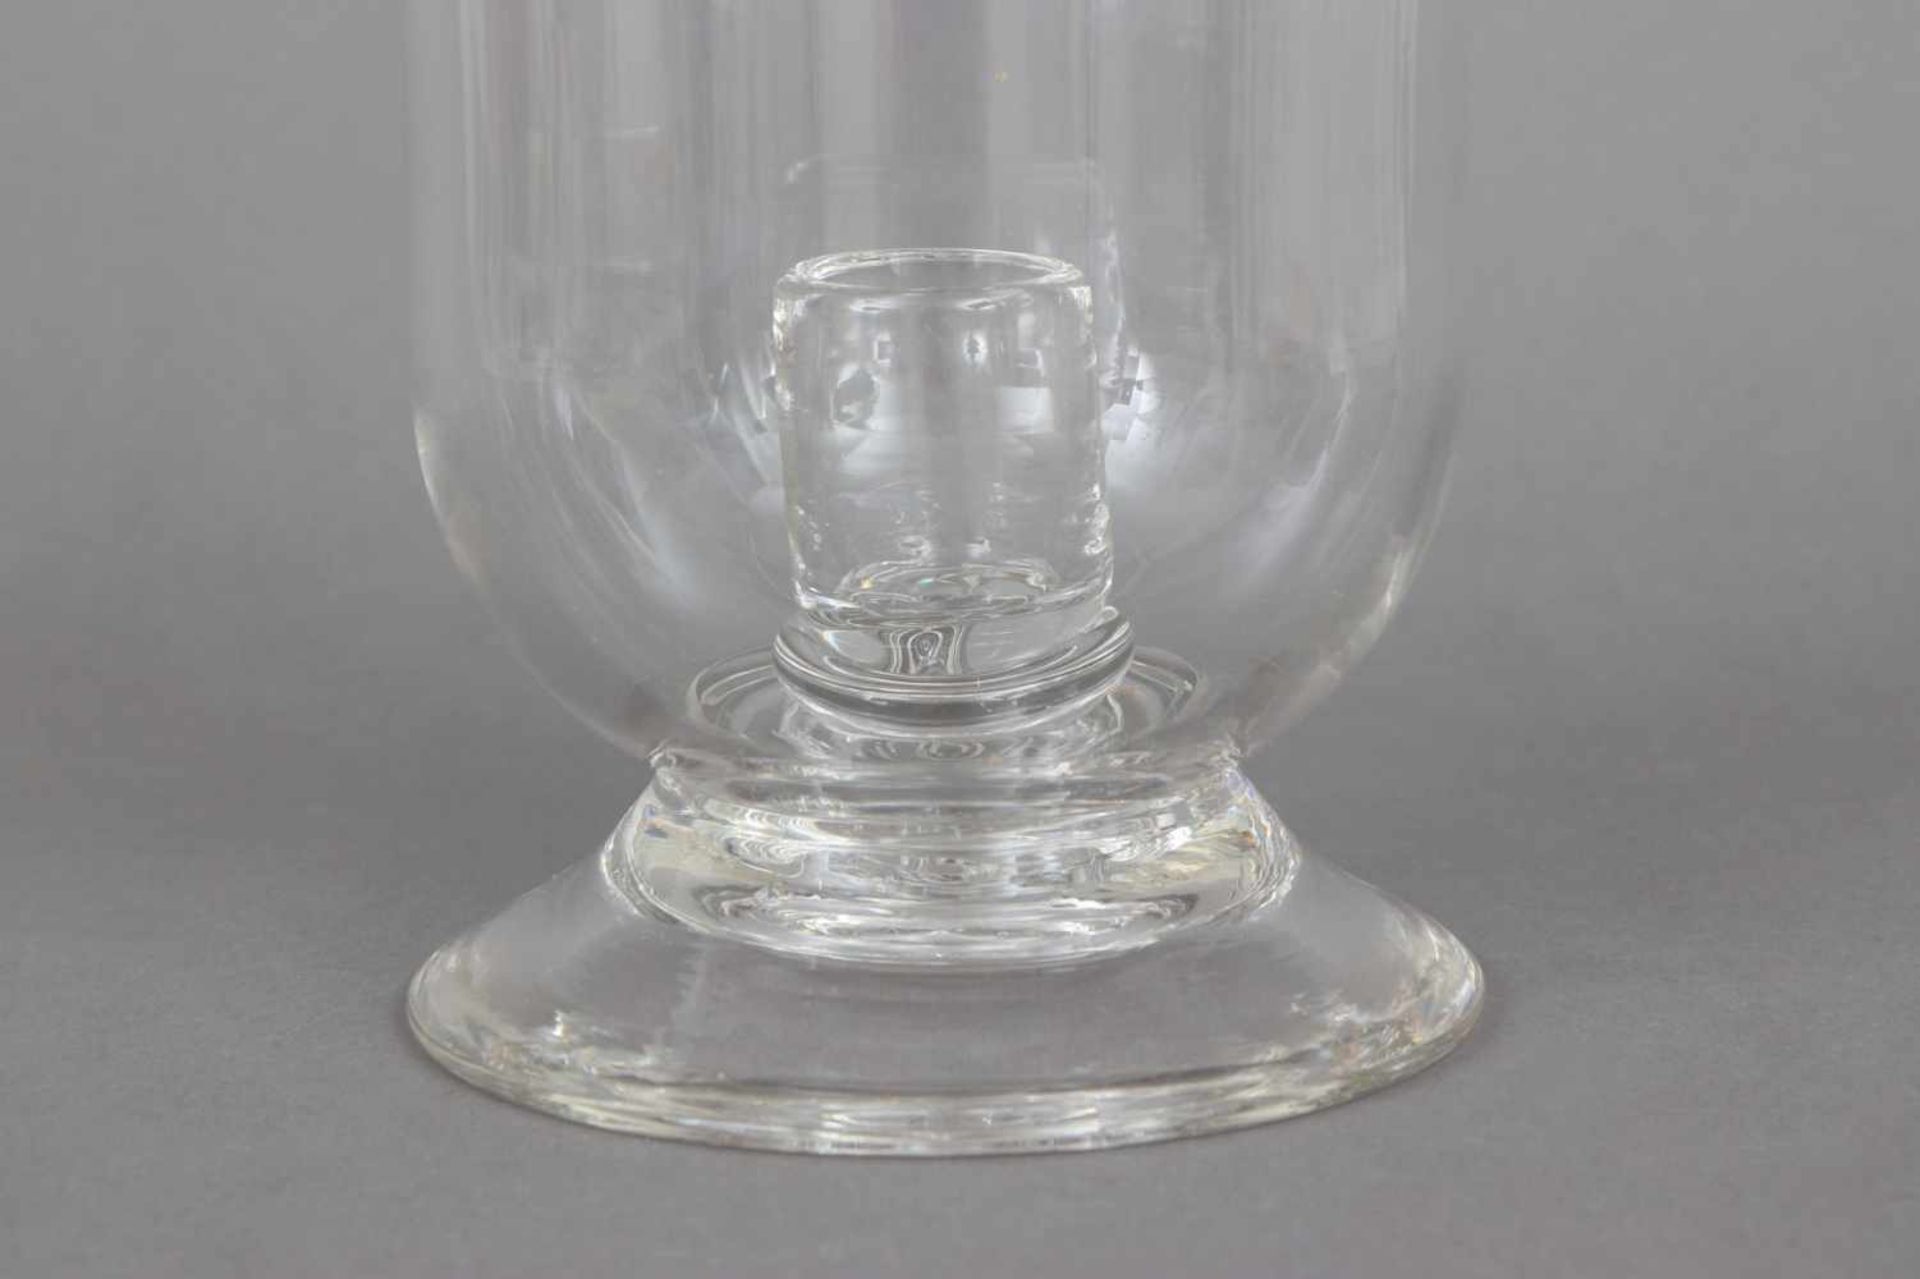 GUNTER LAMBERT Windlicht ¨Veneto¨Kristall-Glas, zylindrischer Korpus auf eingezogenem Rundstand, - Bild 2 aus 3